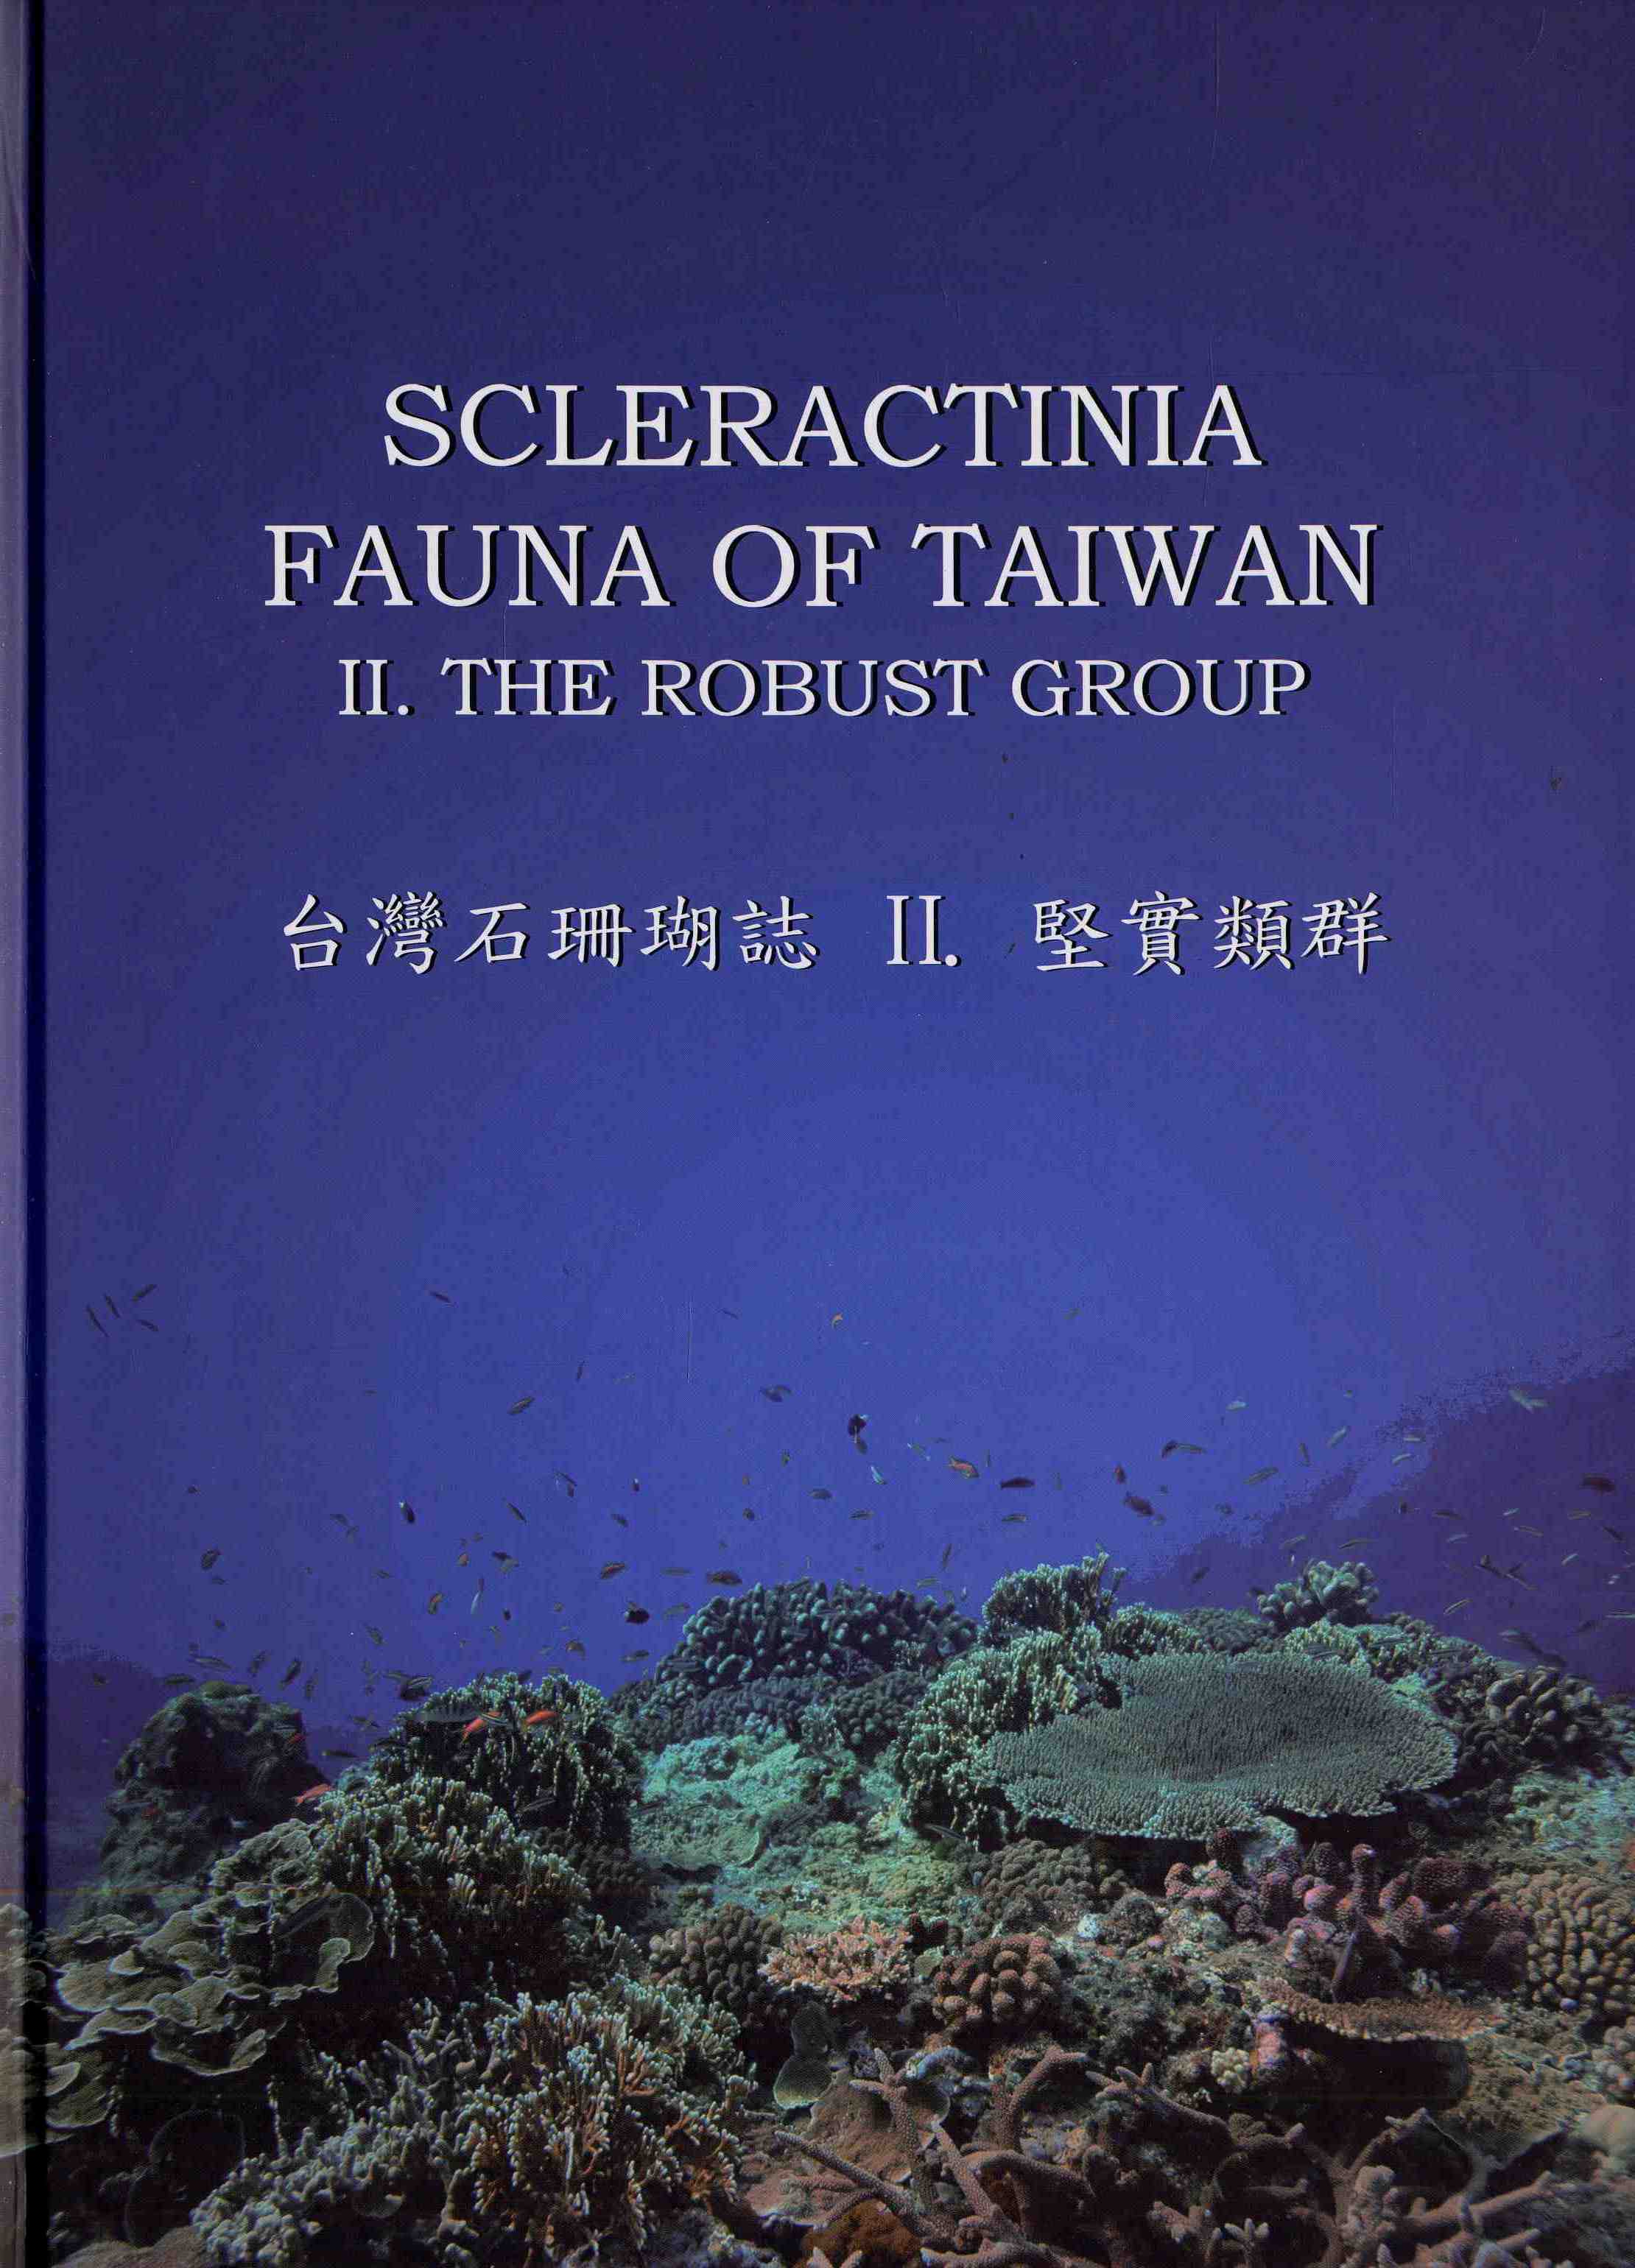 Scleractinia Fauna of Taiwan. II. The Robust Group